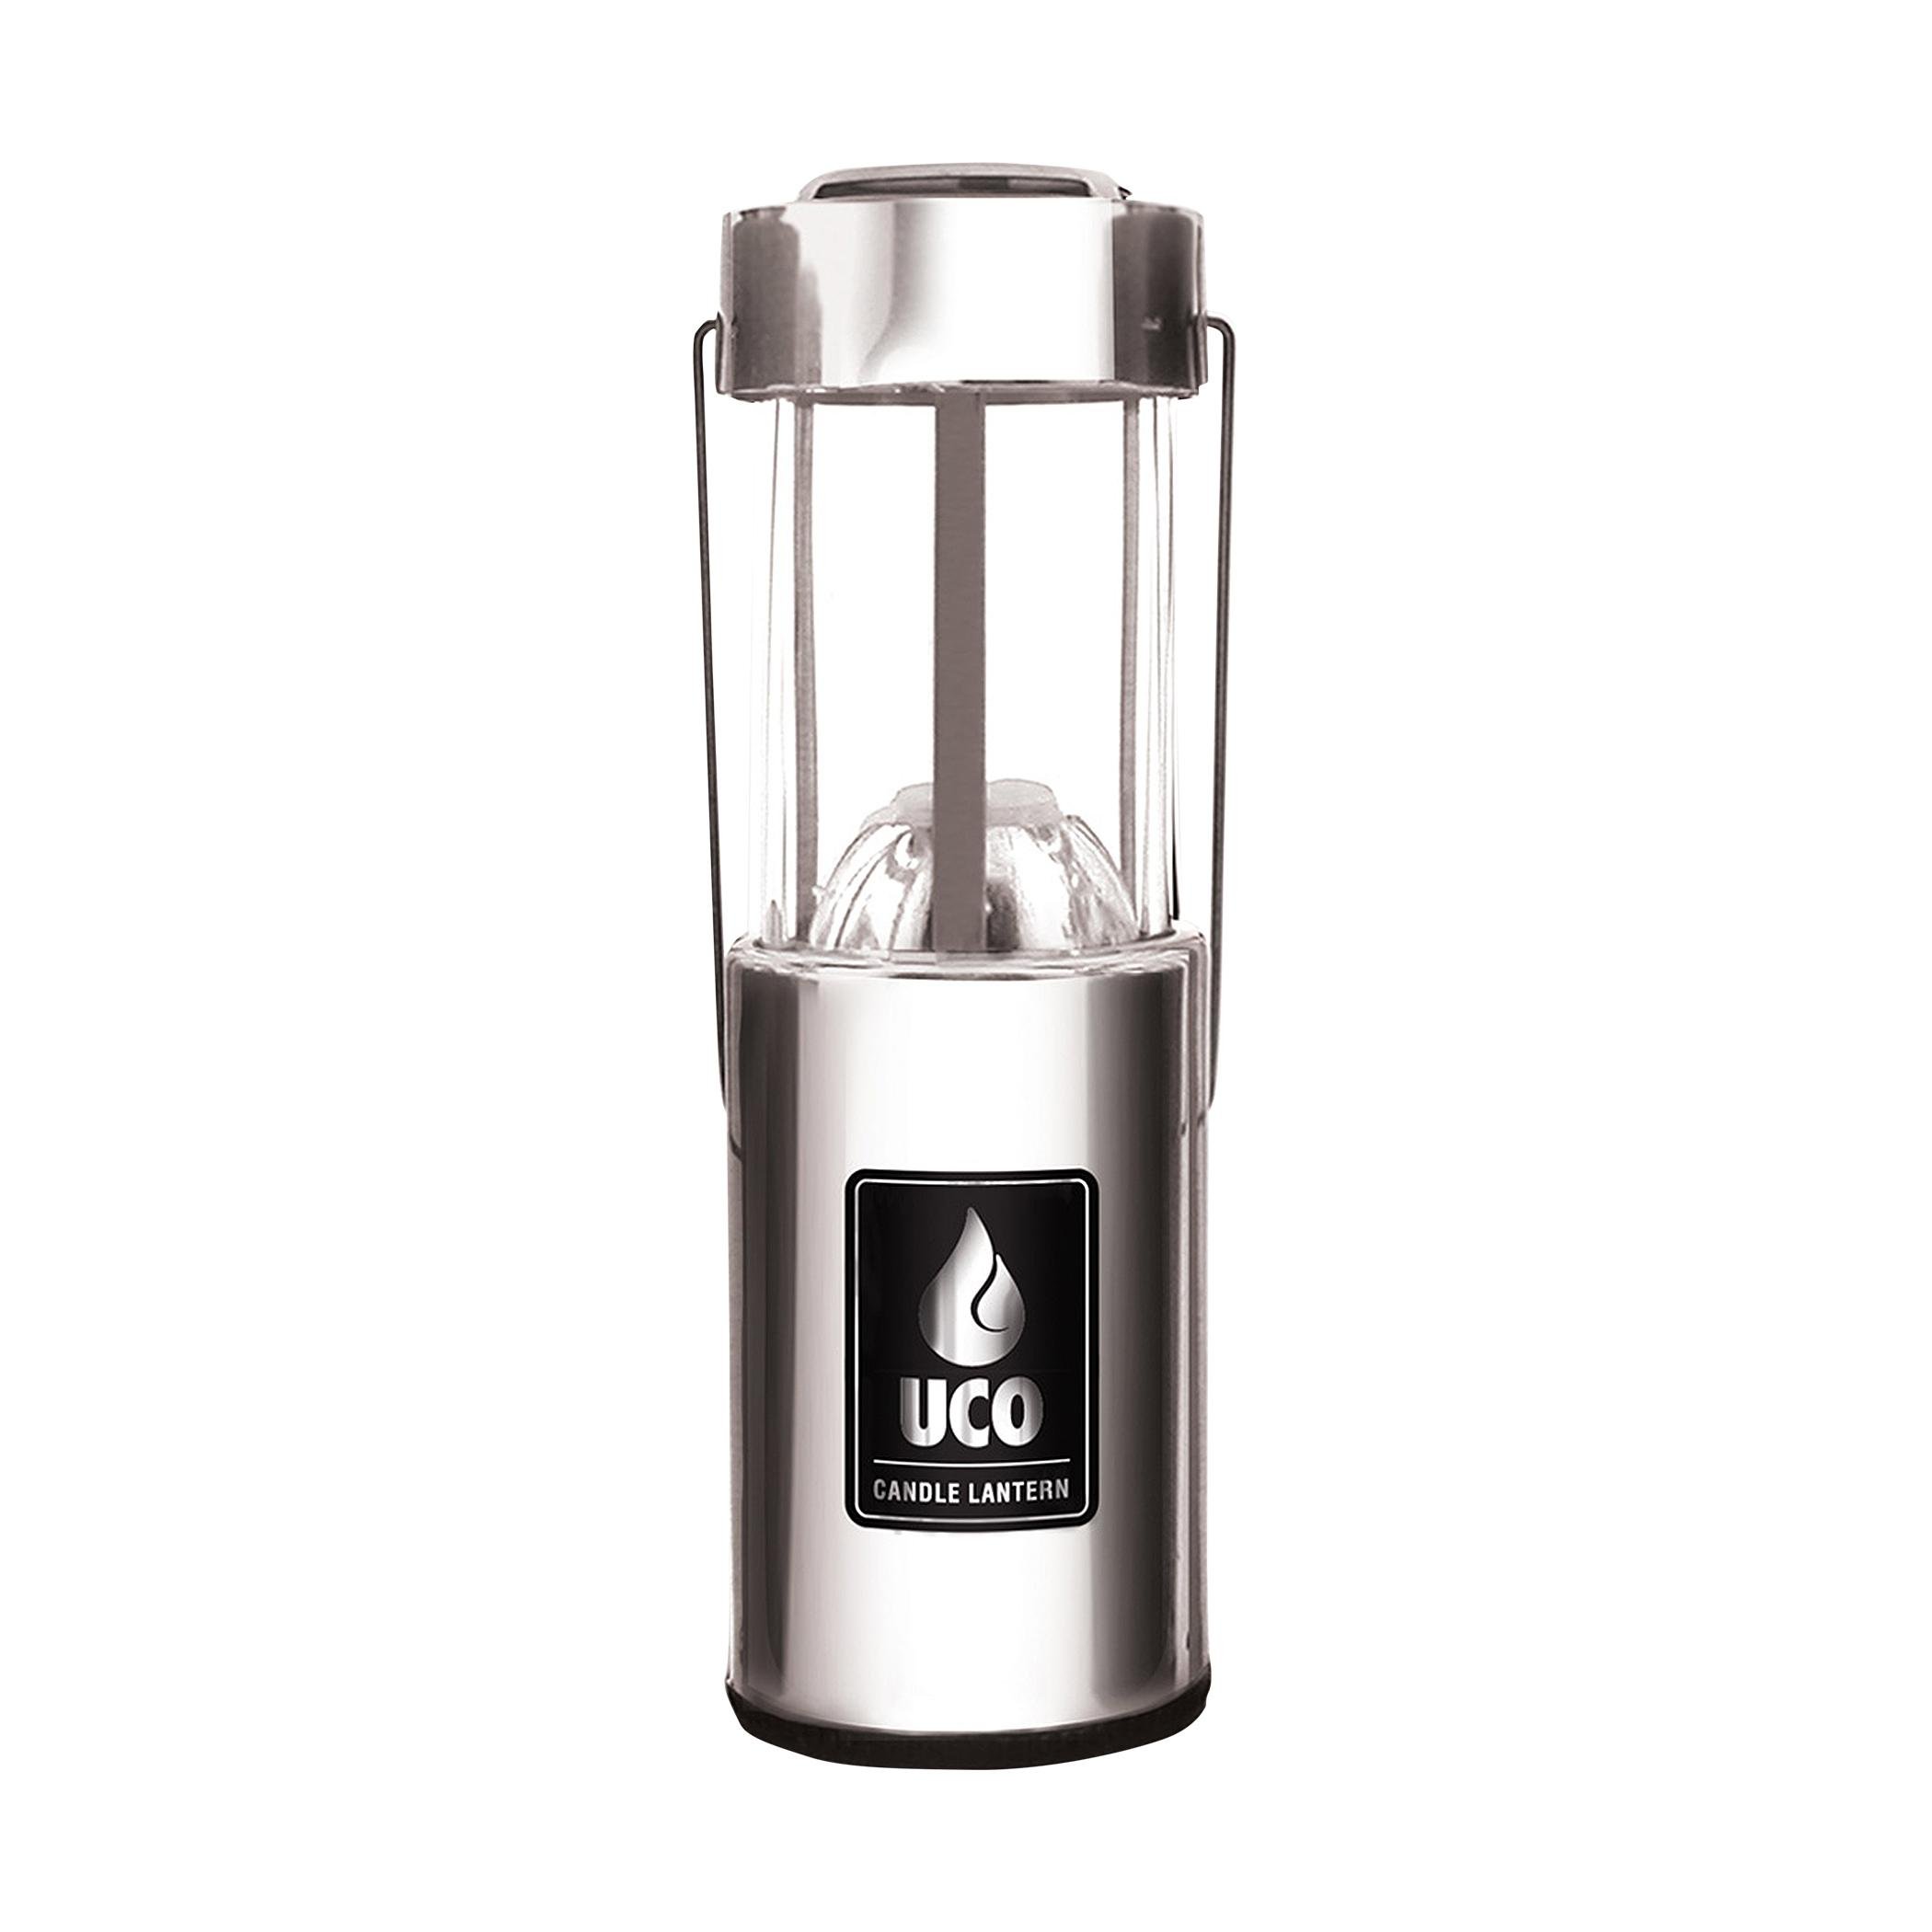  Uco Aluminum Candle Lantern